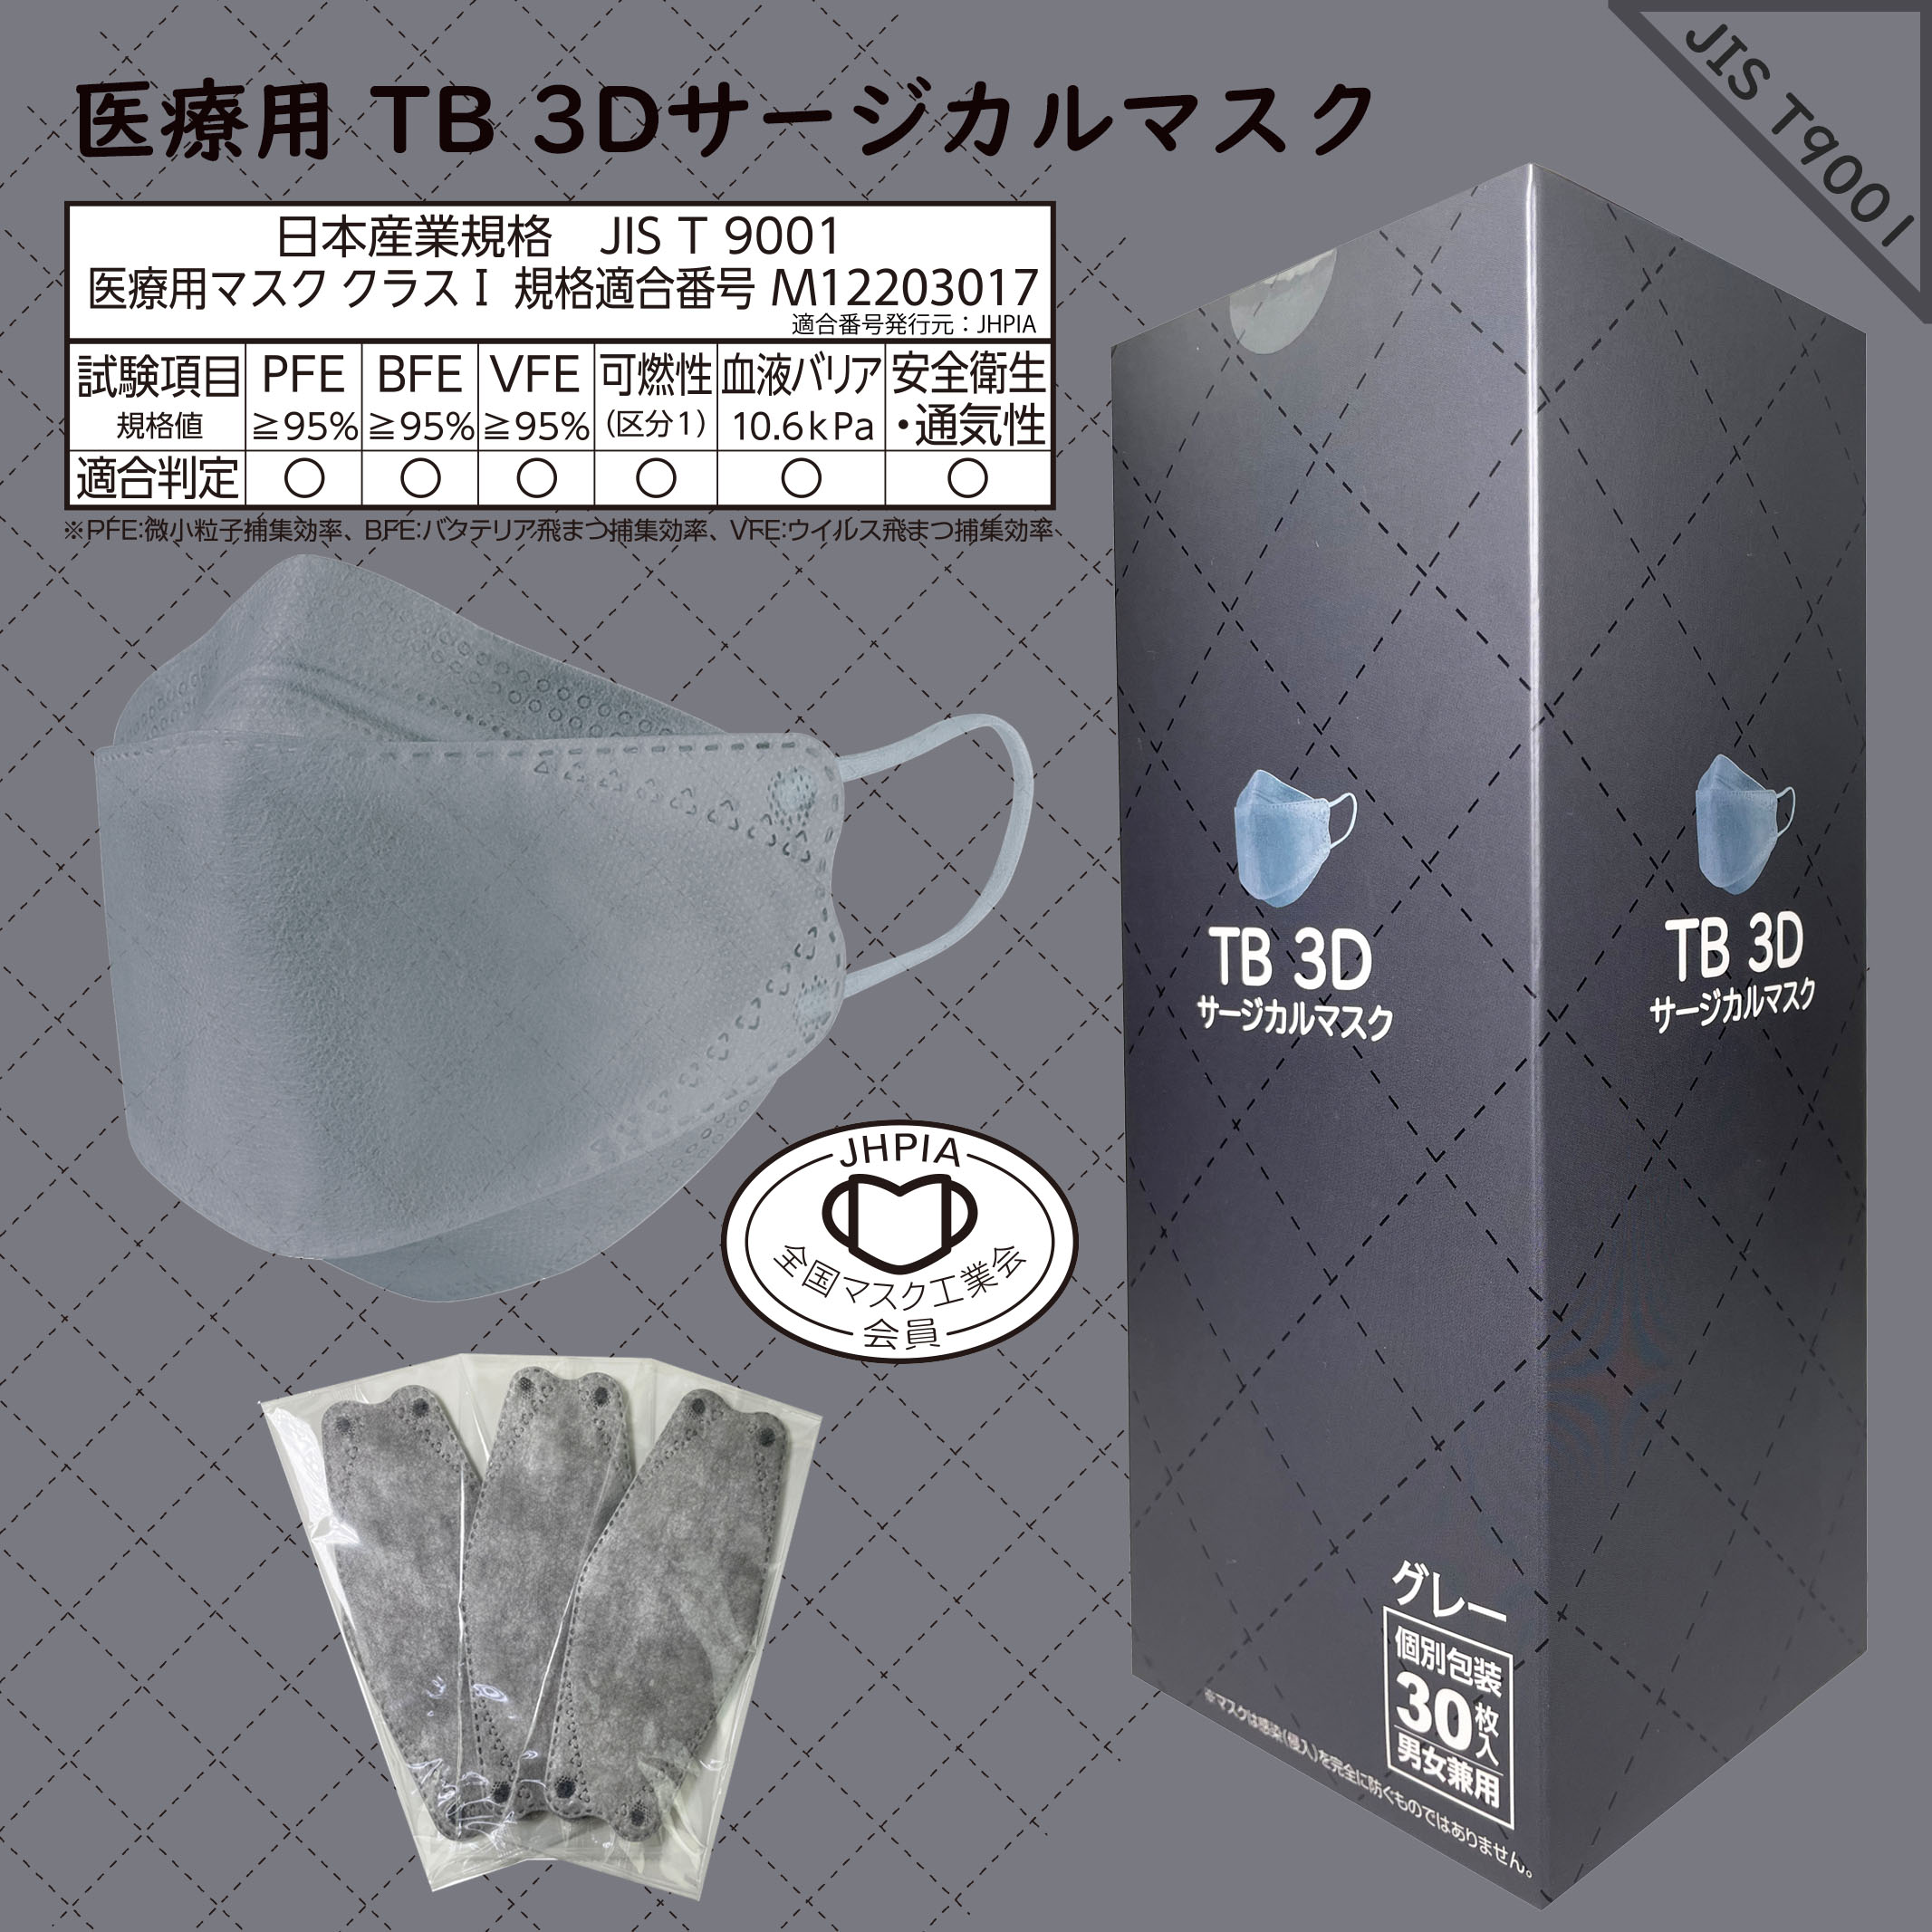 つばさ(Tsubasa) TB 3Dサージカルマスク・個包装・3層構造 (JIS T9001適合審査合格品) 医療用立体マスク グレー/フリーサイズ 1BOX-30枚入り